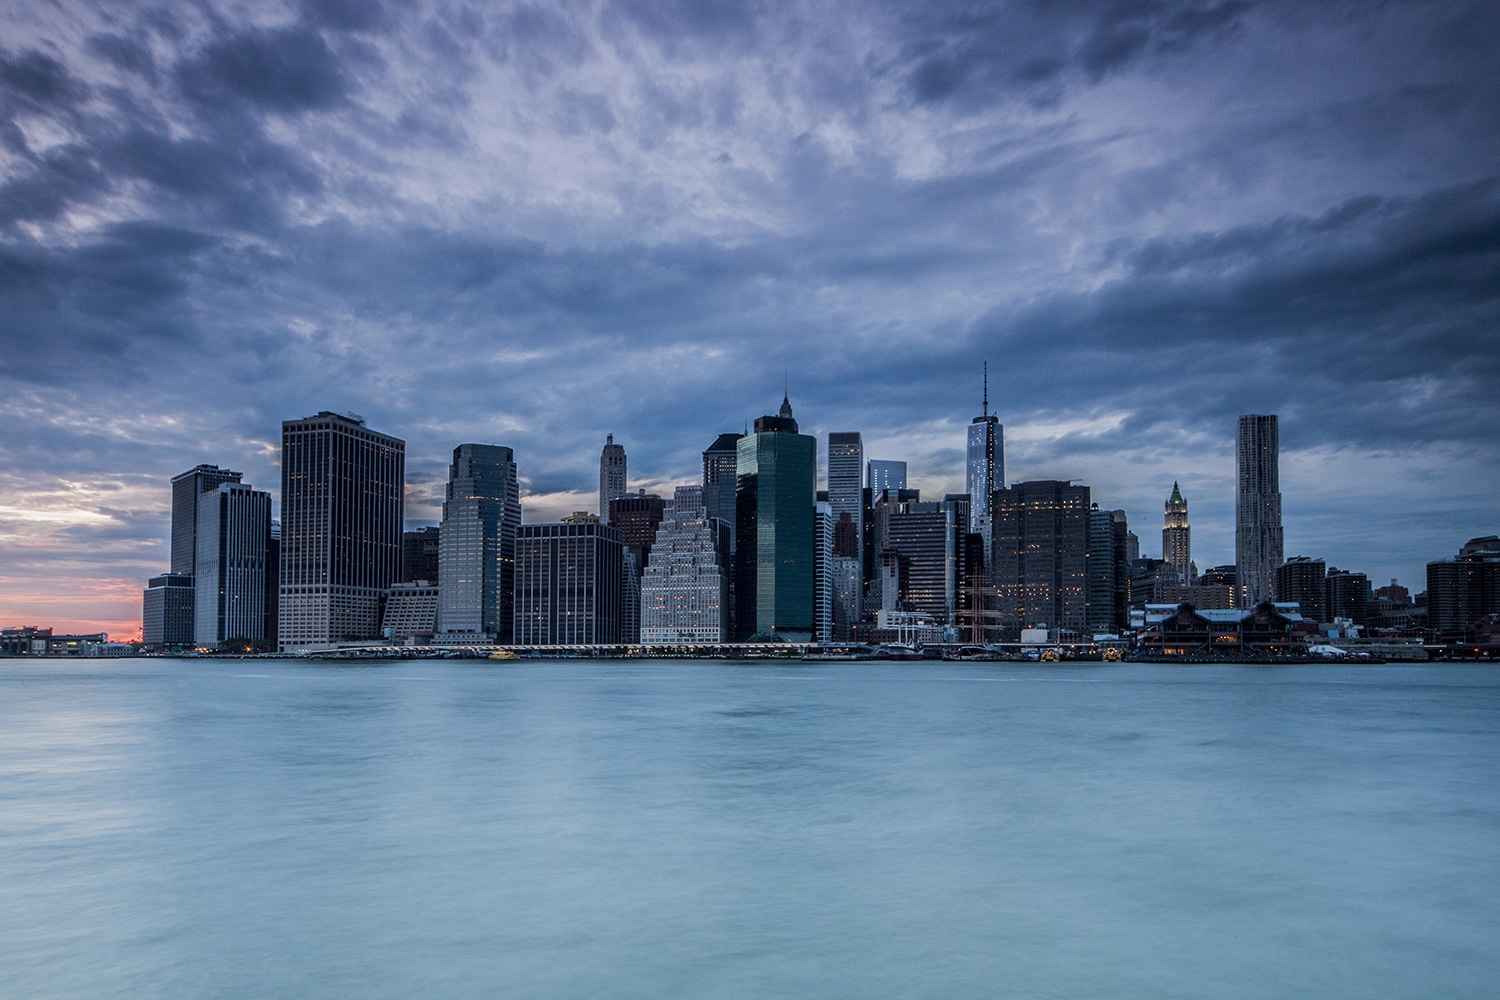 Manhattan Island Skyline, New York New York Landscapes Architecture